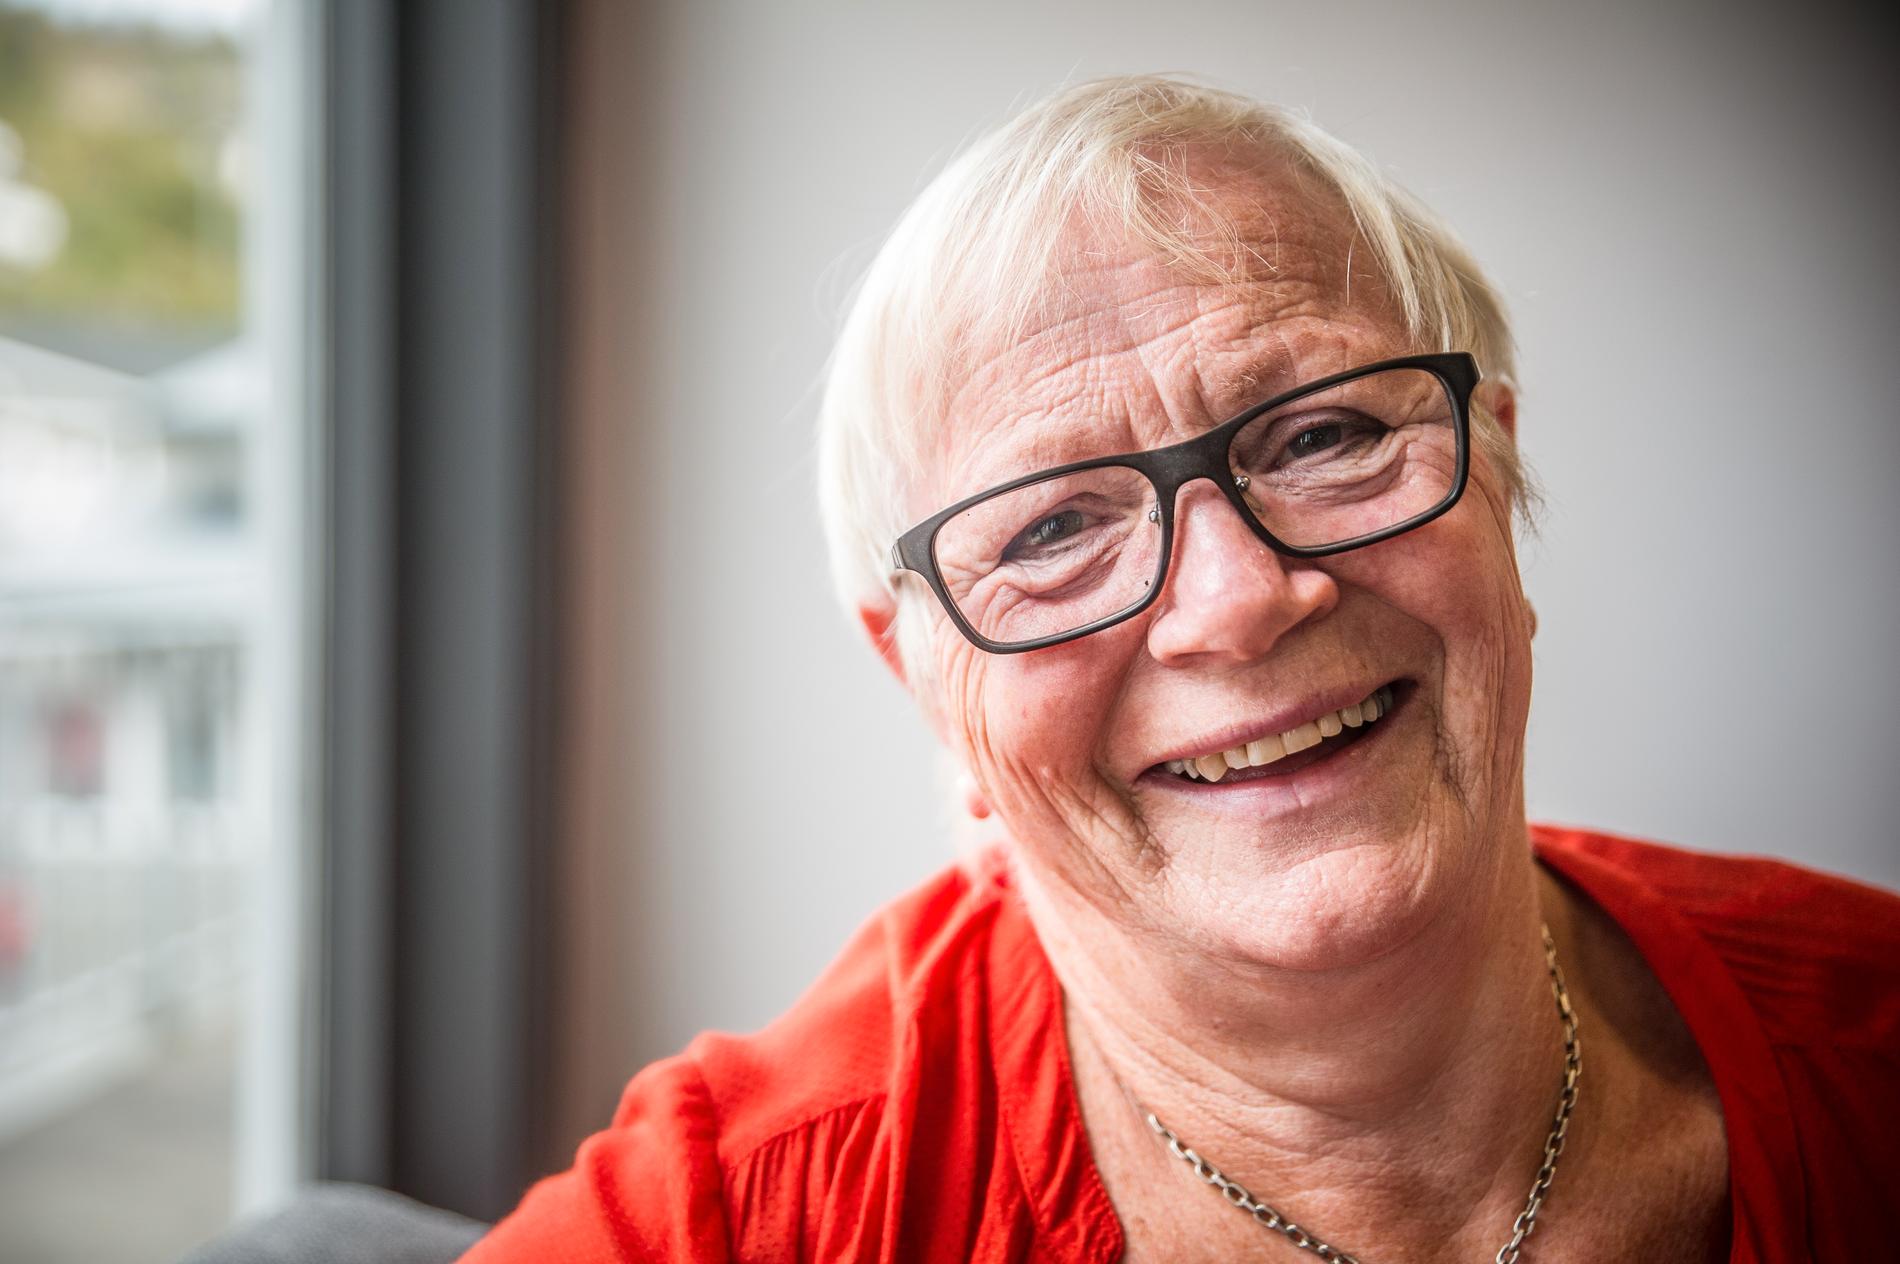 Eldbjørg Remme fikk brystkreft i 2012, og har gått gjennom en krevende behandling på veien mot å bli kreftfri. Hverdagen etterpå var langt fra hvordan hun hadde forestilt seg.